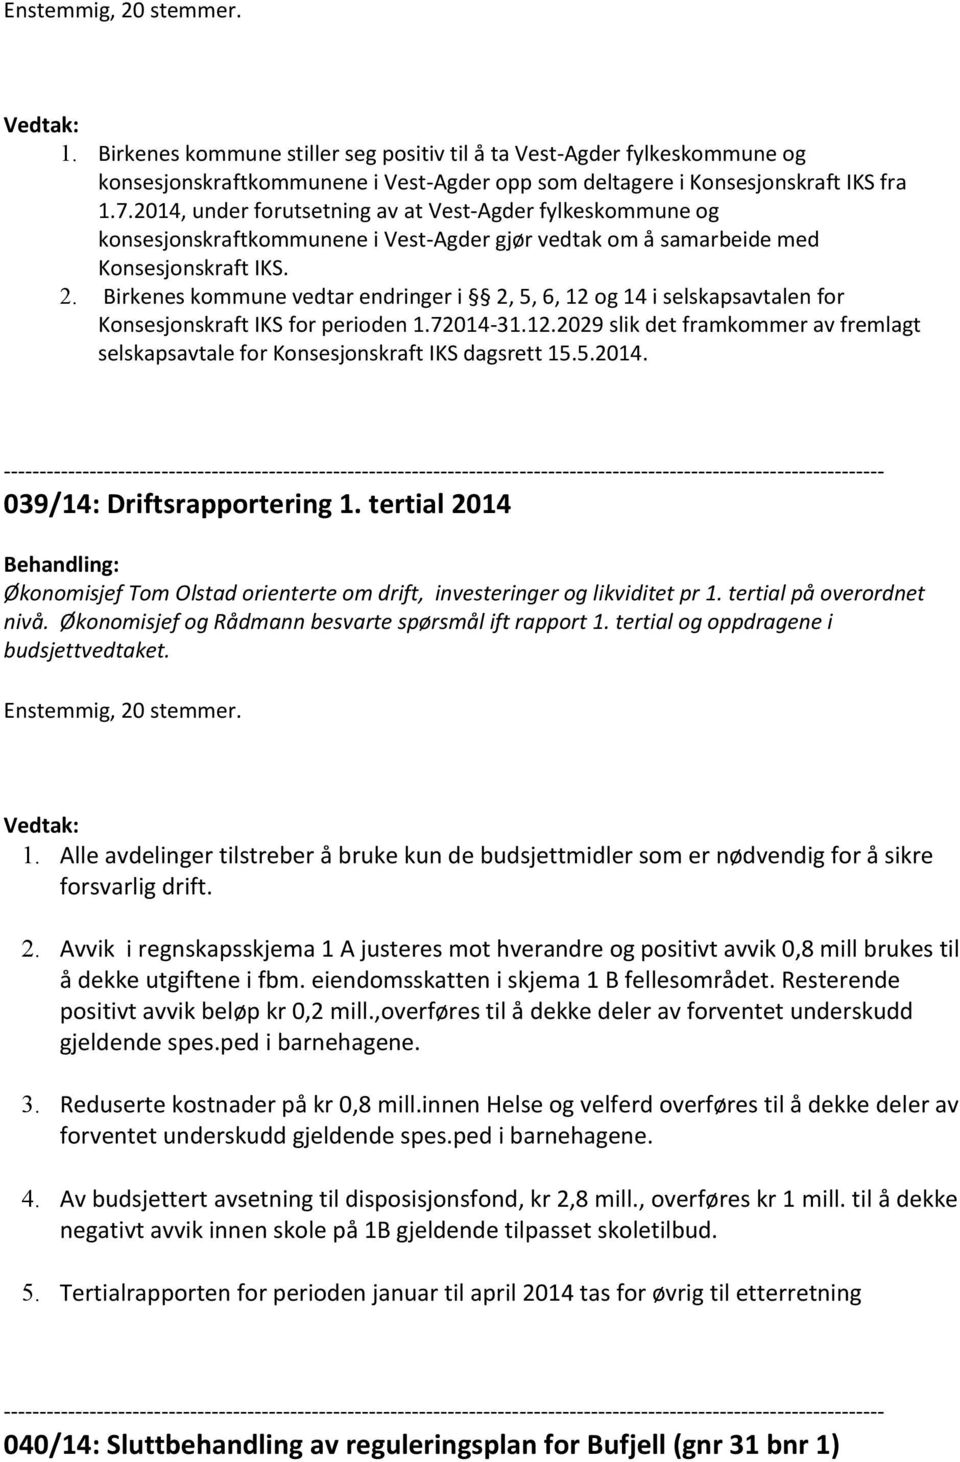 Birkenes kommune vedtar endringer i 2, 5, 6, 12 og 14 i selskapsavtalen for Konsesjonskraft IKS for perioden 1.72014-31.12.2029 slik det framkommer av fremlagt selskapsavtale for Konsesjonskraft IKS dagsrett 15.